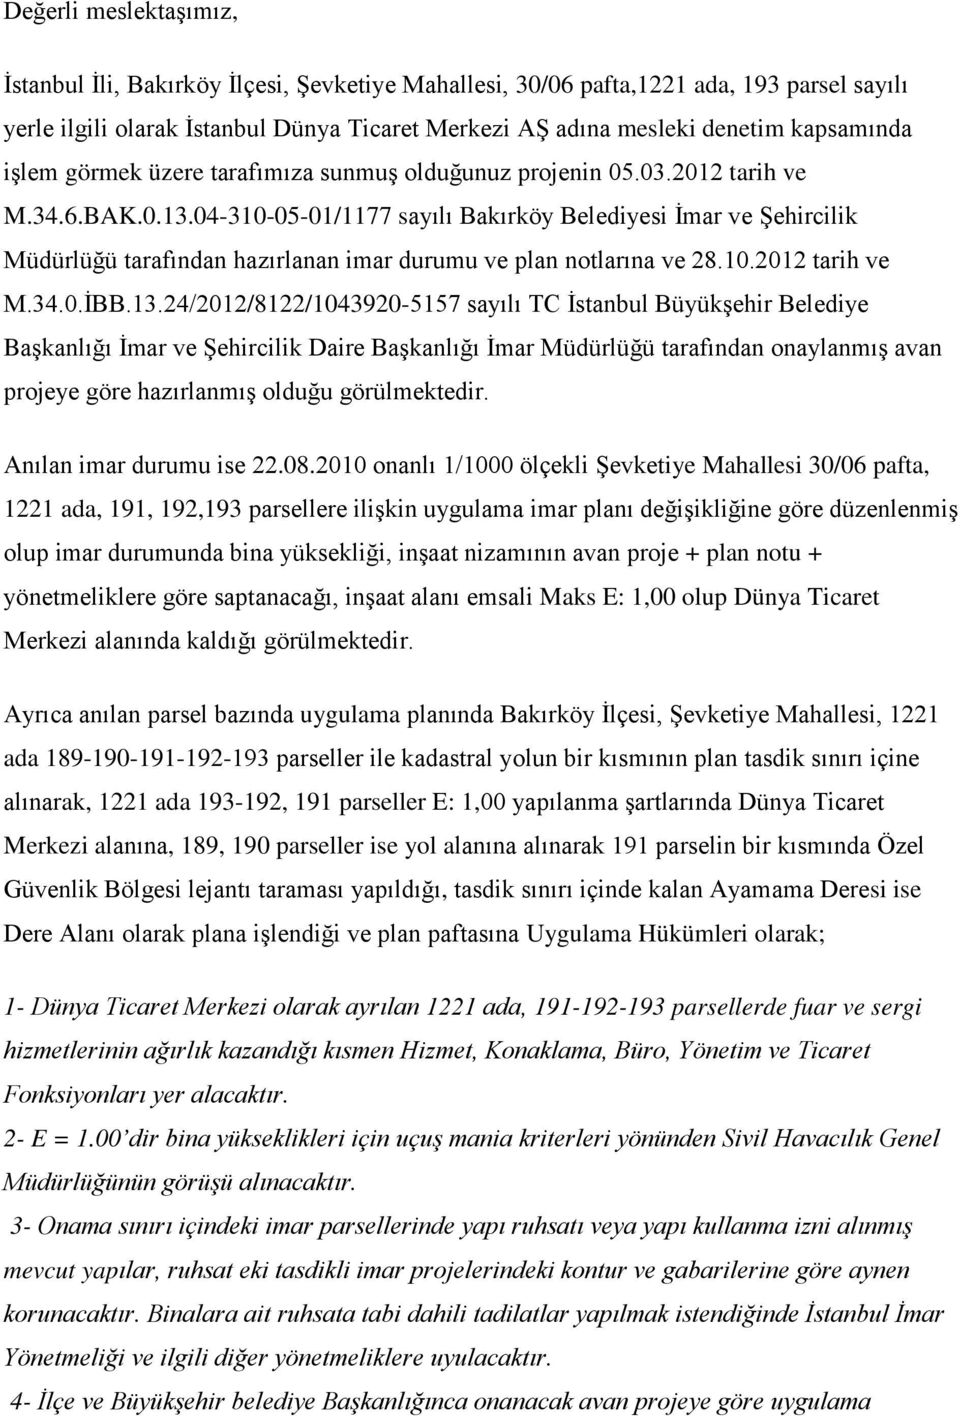 04-310-05-01/1177 sayılı Bakırköy Belediyesi İmar ve Şehircilik Müdürlüğü tarafından hazırlanan imar durumu ve plan notlarına ve 28.10.2012 tarih ve M.34.0.İBB.13.